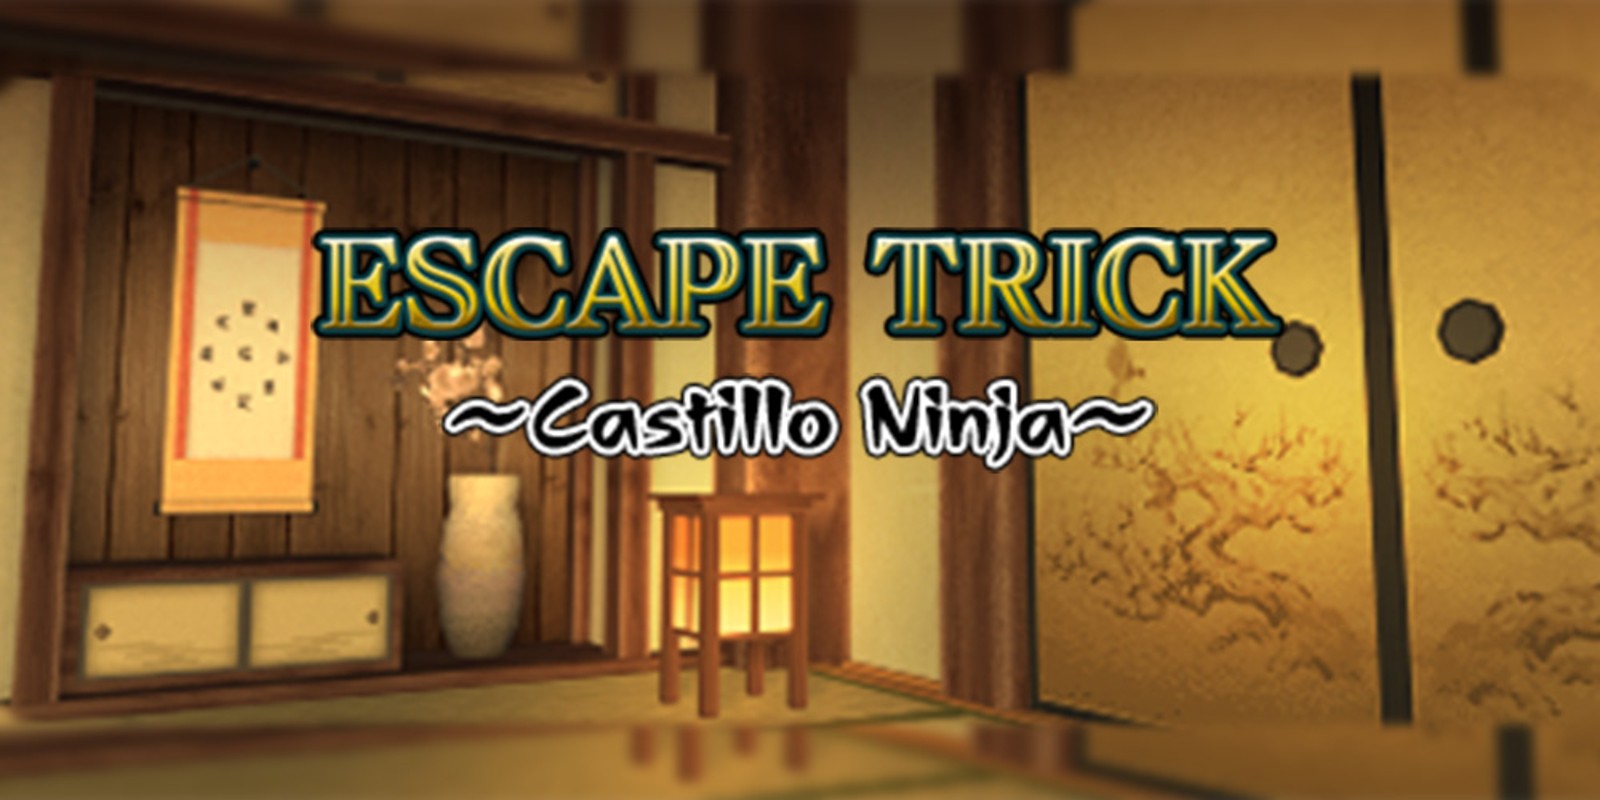 GO Series: Escape Trick - Castillo Ninja